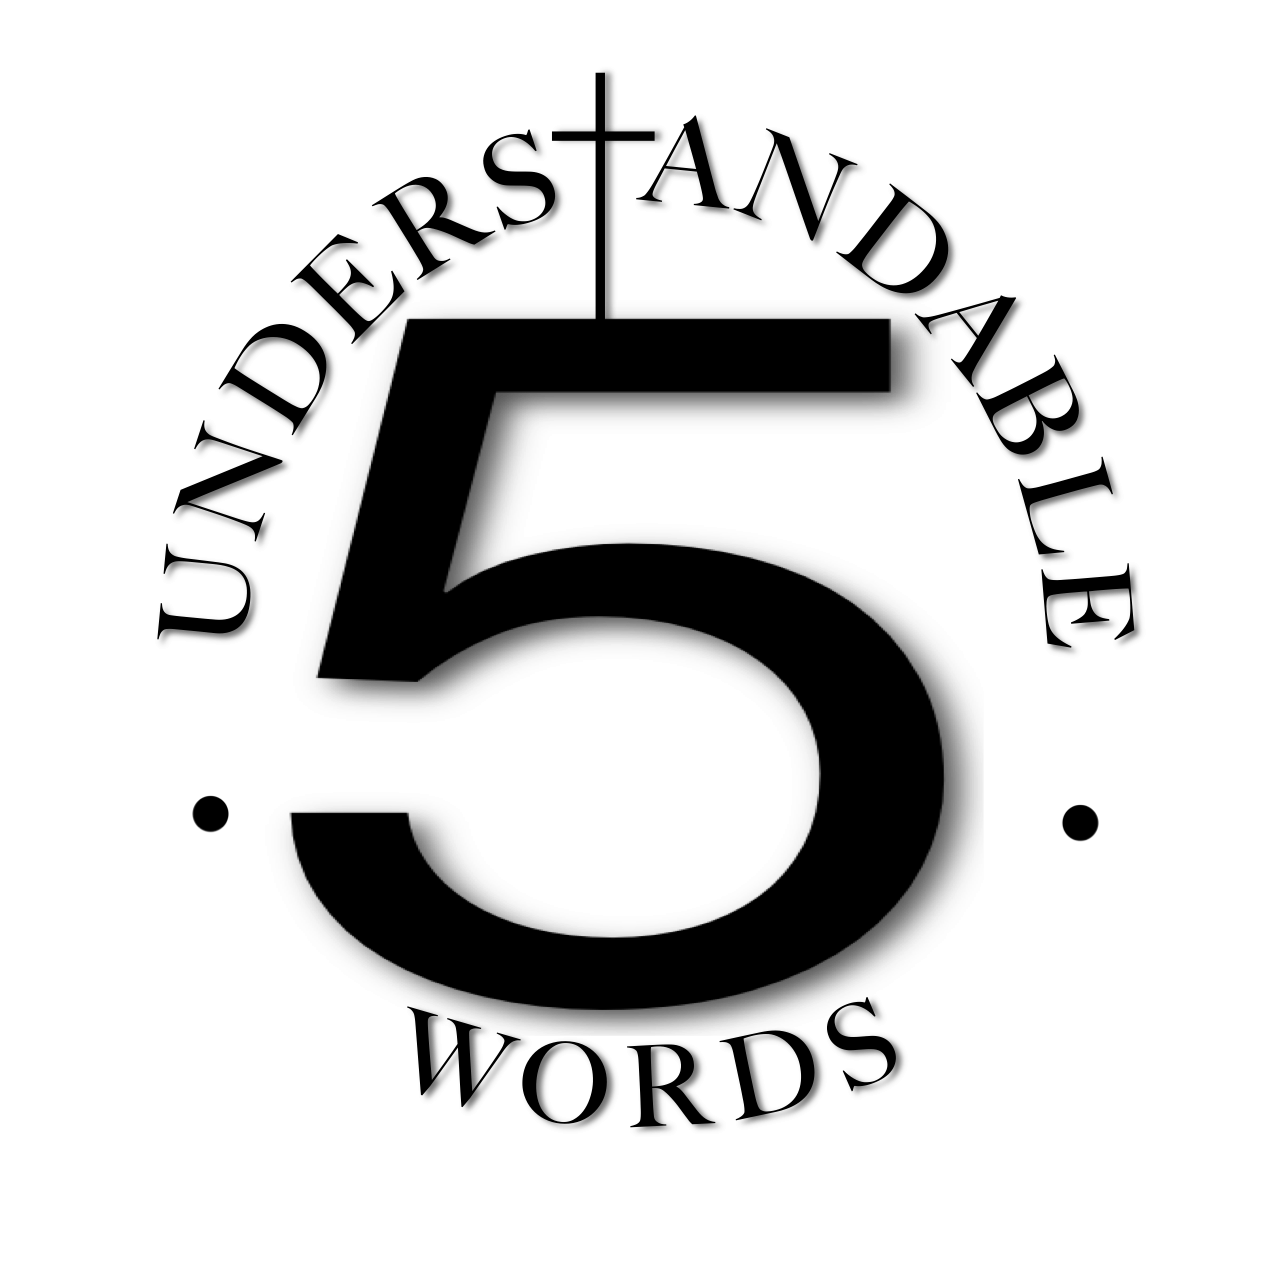 5 Understandable Words